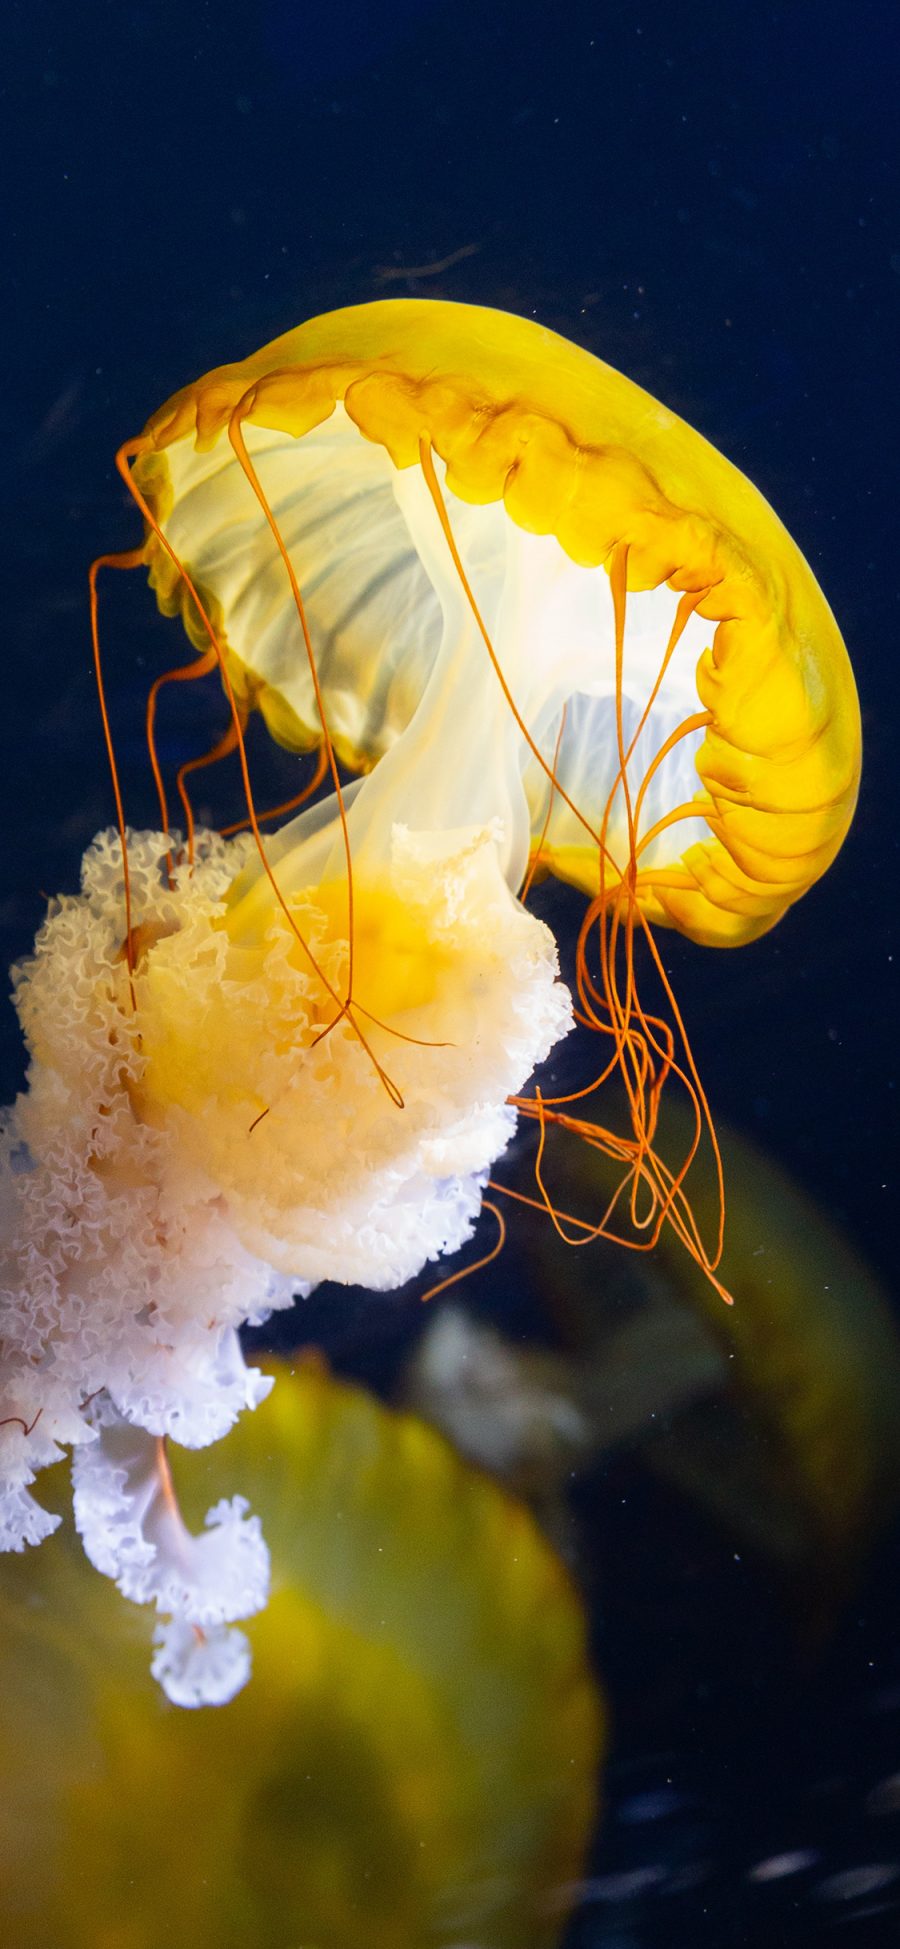 [2436×1125]水母 游动 海洋生物 透明 苹果手机壁纸图片